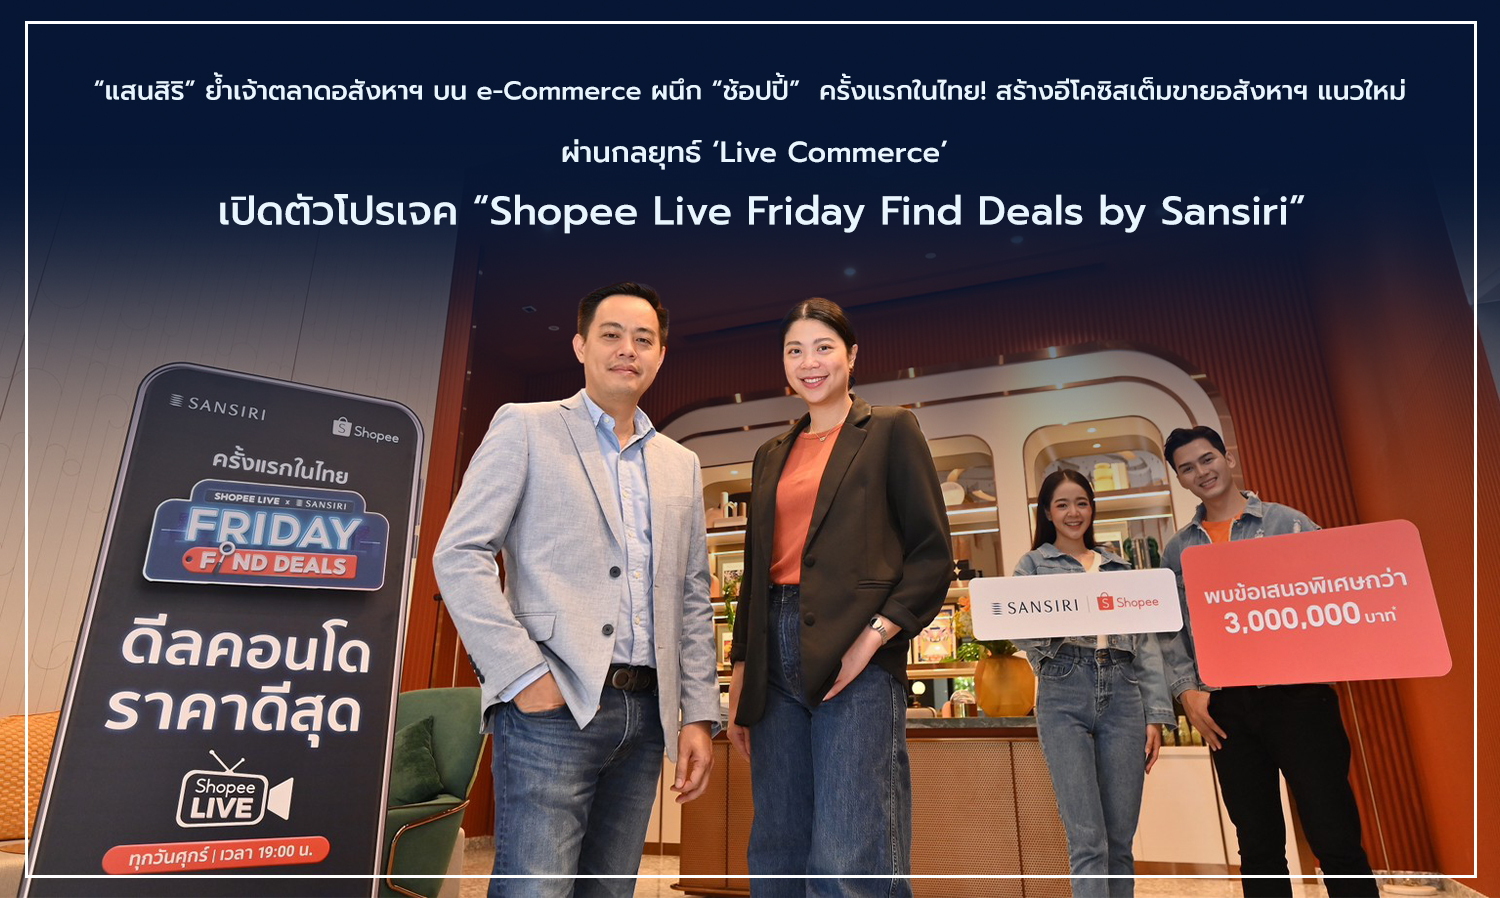 แสนสิริ ย้ำเจ้าตลาดอสังหาฯ บน e-Commerce ผนึก ช้อปปี้ ครั้งแรกในไทย สร้างอีโคซิสเต็มขายอสังหาฯ แนวใหม่ ผ่านกลยุทธ์ Live Commerce